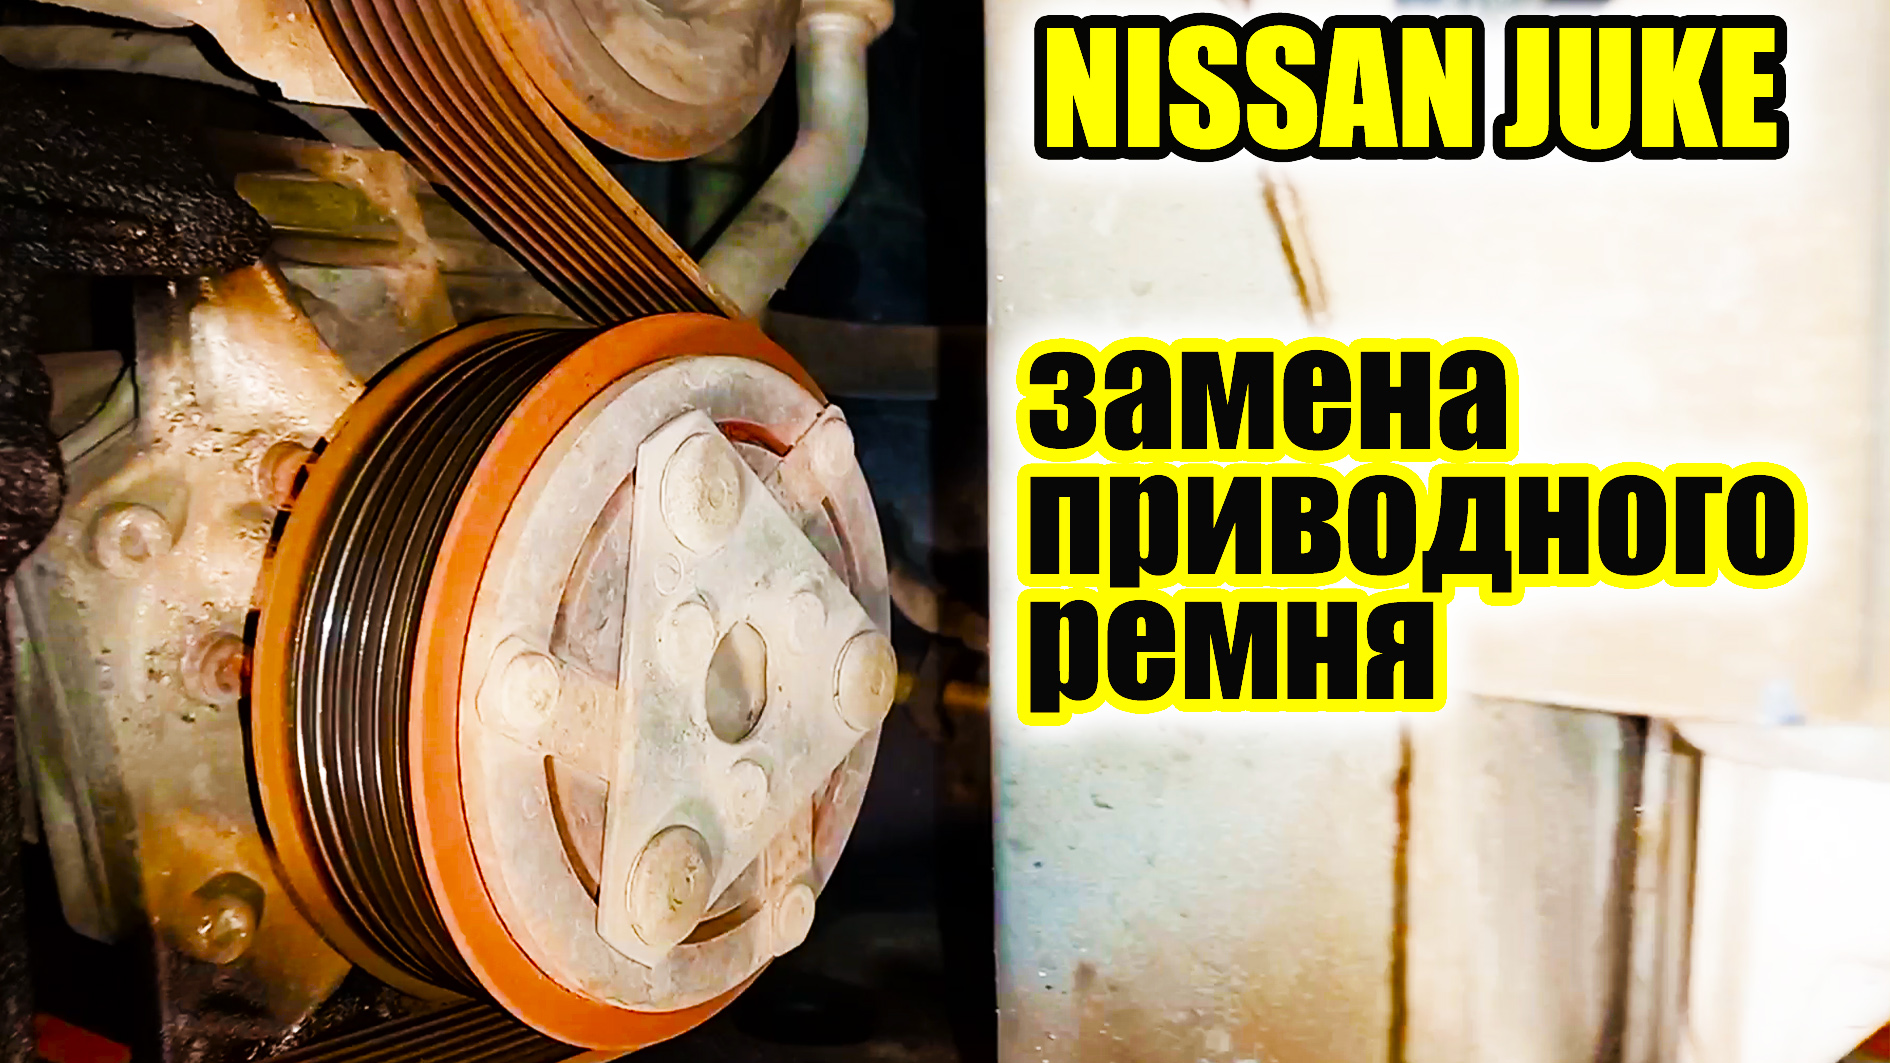 Цены на замену ремней и роликов Nissan Juke